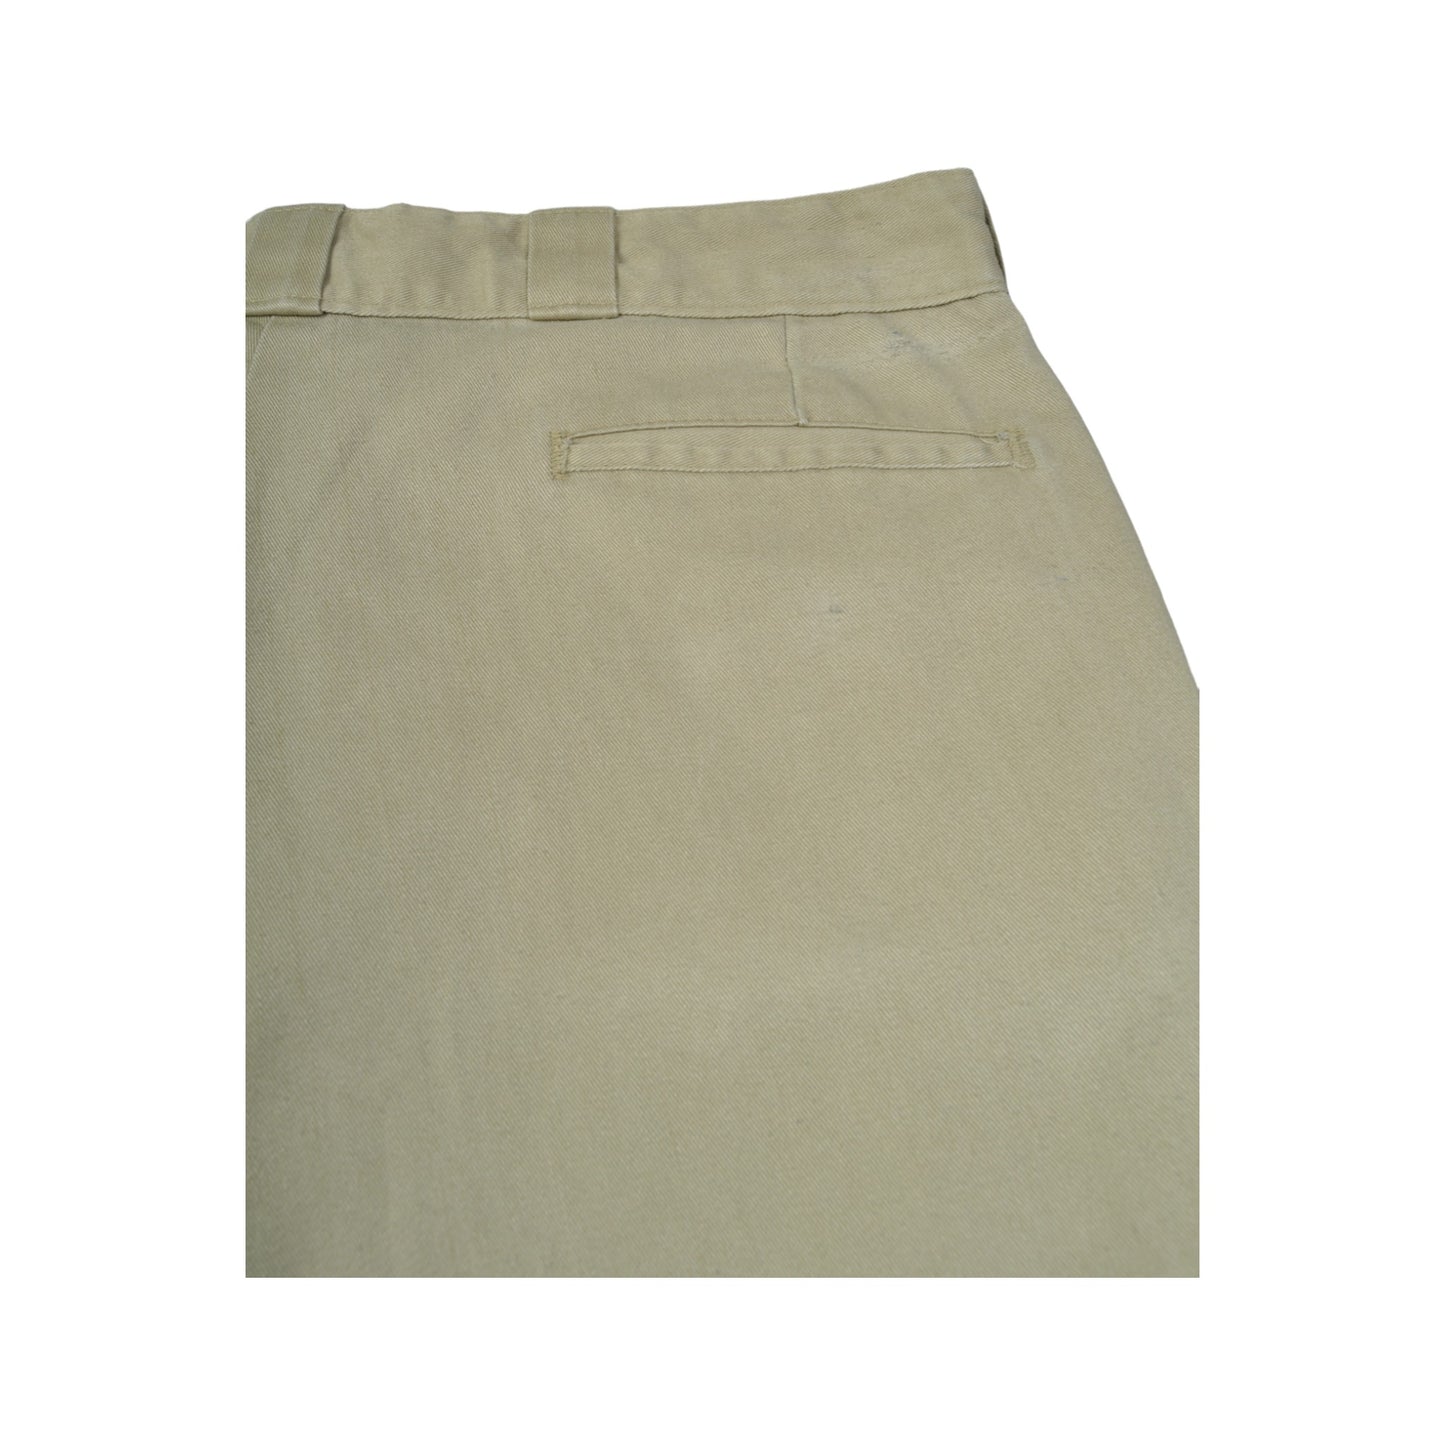 Vintage Dickies Workwear Casual Shorts Beige W38